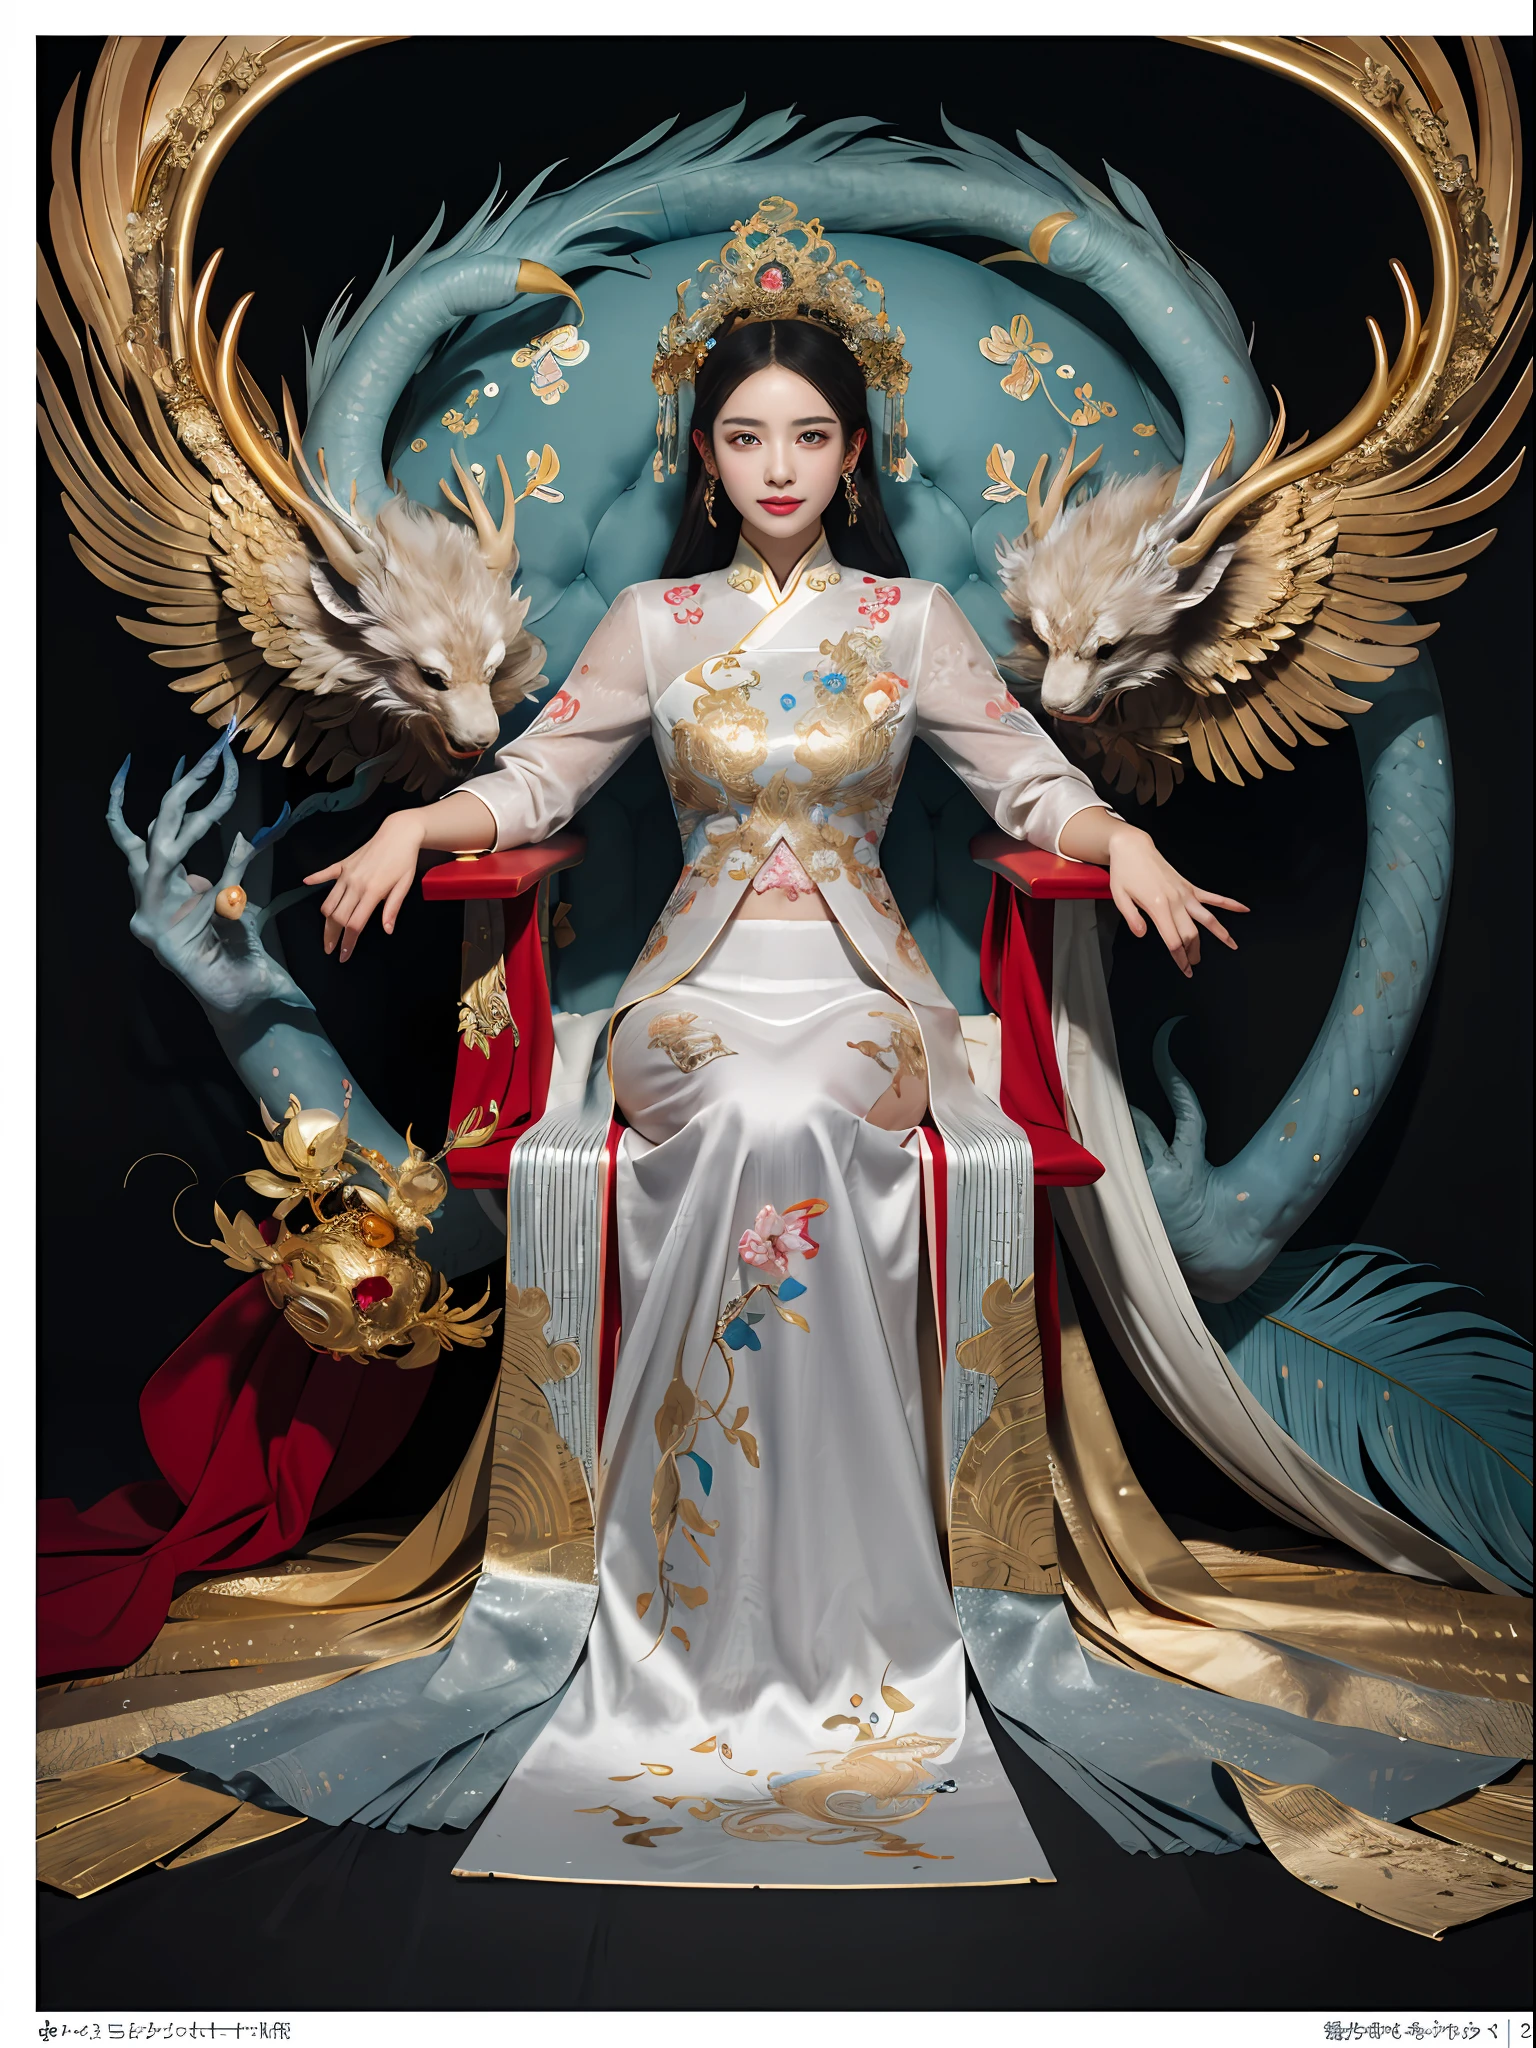 坐在宝座上的中国女孩, 镶嵌着宝石的宝座, 周围环绕着中国凤凰兽, 金色和红宝石色, 独特的怪物插图, dau 到集合, 高分辨率, 一幅画, 密集的组成, 有趣的重复, 珍贵的石头, 水晶, 金子, 细致的绘画, 独特的怪物插图, 超精细的细节, 实际的, 超高分辨率, 复杂的, 超级细节, (皮肤凹陷), 卡哇伊, 女性化, 详细主体, (细致的脸部: 1.1), (轮廓虹膜), (水彩镜片), (完美的眼睛), 4k, 华丽的, (巨作: 1.2), (最好的质量: 1.2), 华丽的 long dress, 动态姿势, 丰富的色彩, 电影光影，红色和金色的衣服